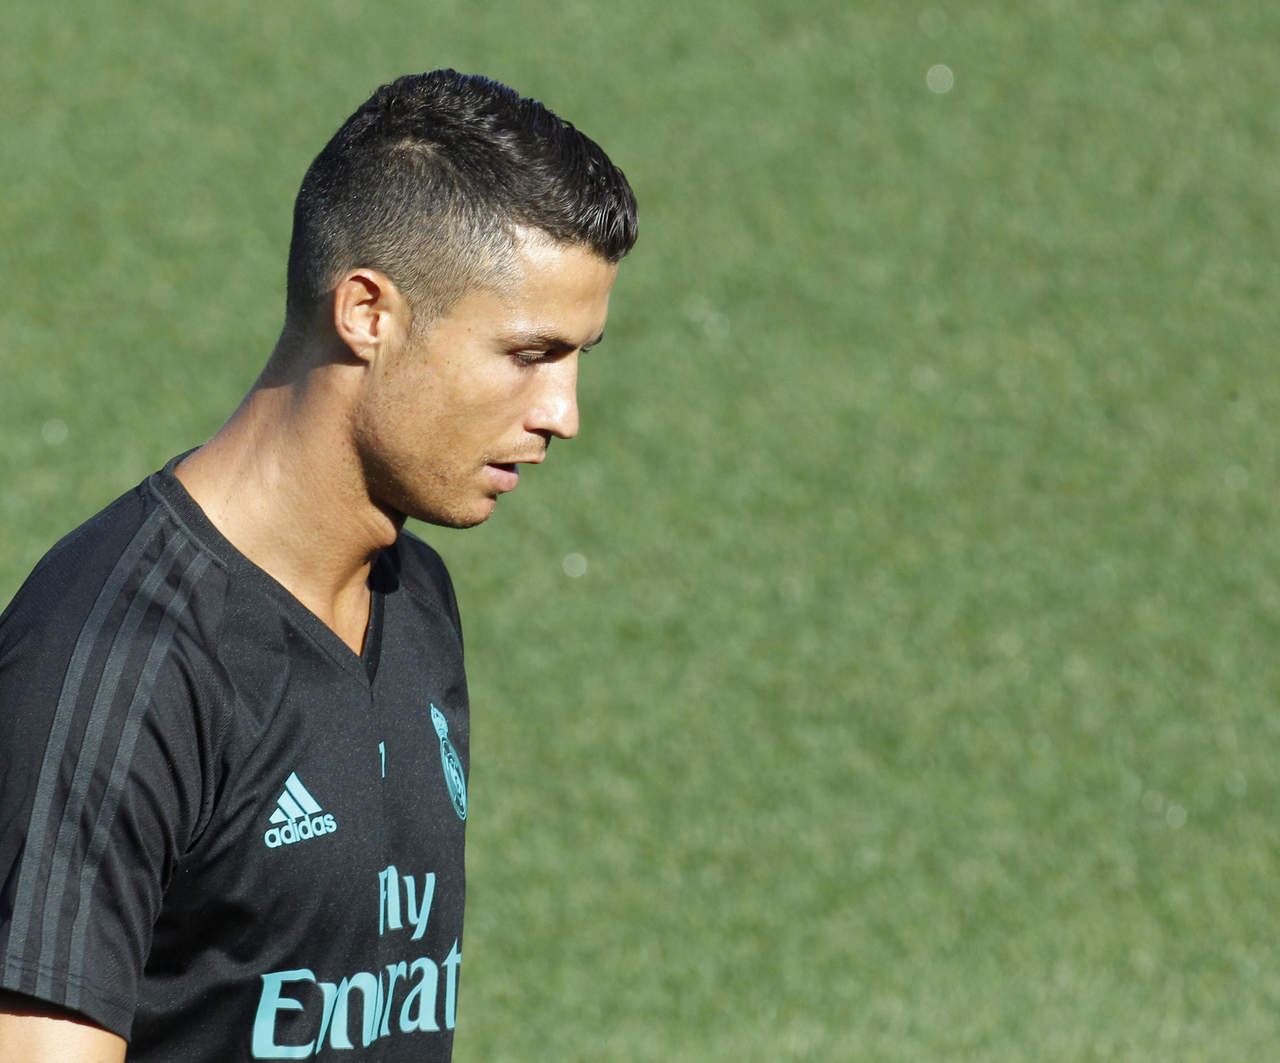 La segunda amarilla hizo que el árbitro expulsara a Cristiano Ronaldo en el Camp Nou y se pierde la vuelta de la Supercopa de este miércoles en el estadio Santiago Bernabéu y también los cuatro primeros partidos de Liga, que comienza este fin de semana.
